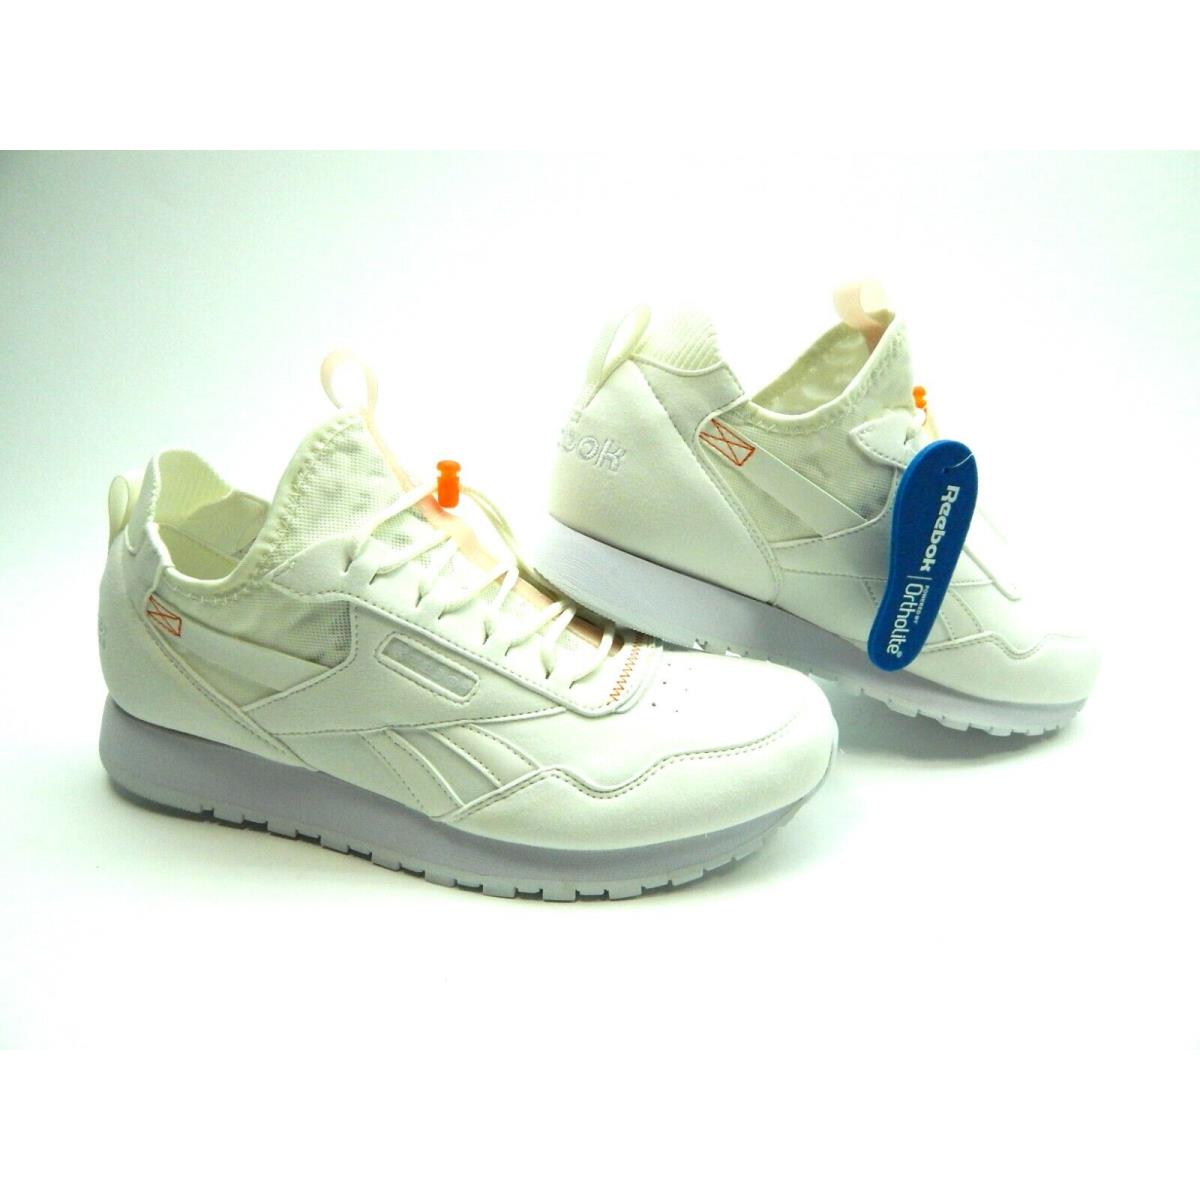 Reebok shoes Harman - White 4